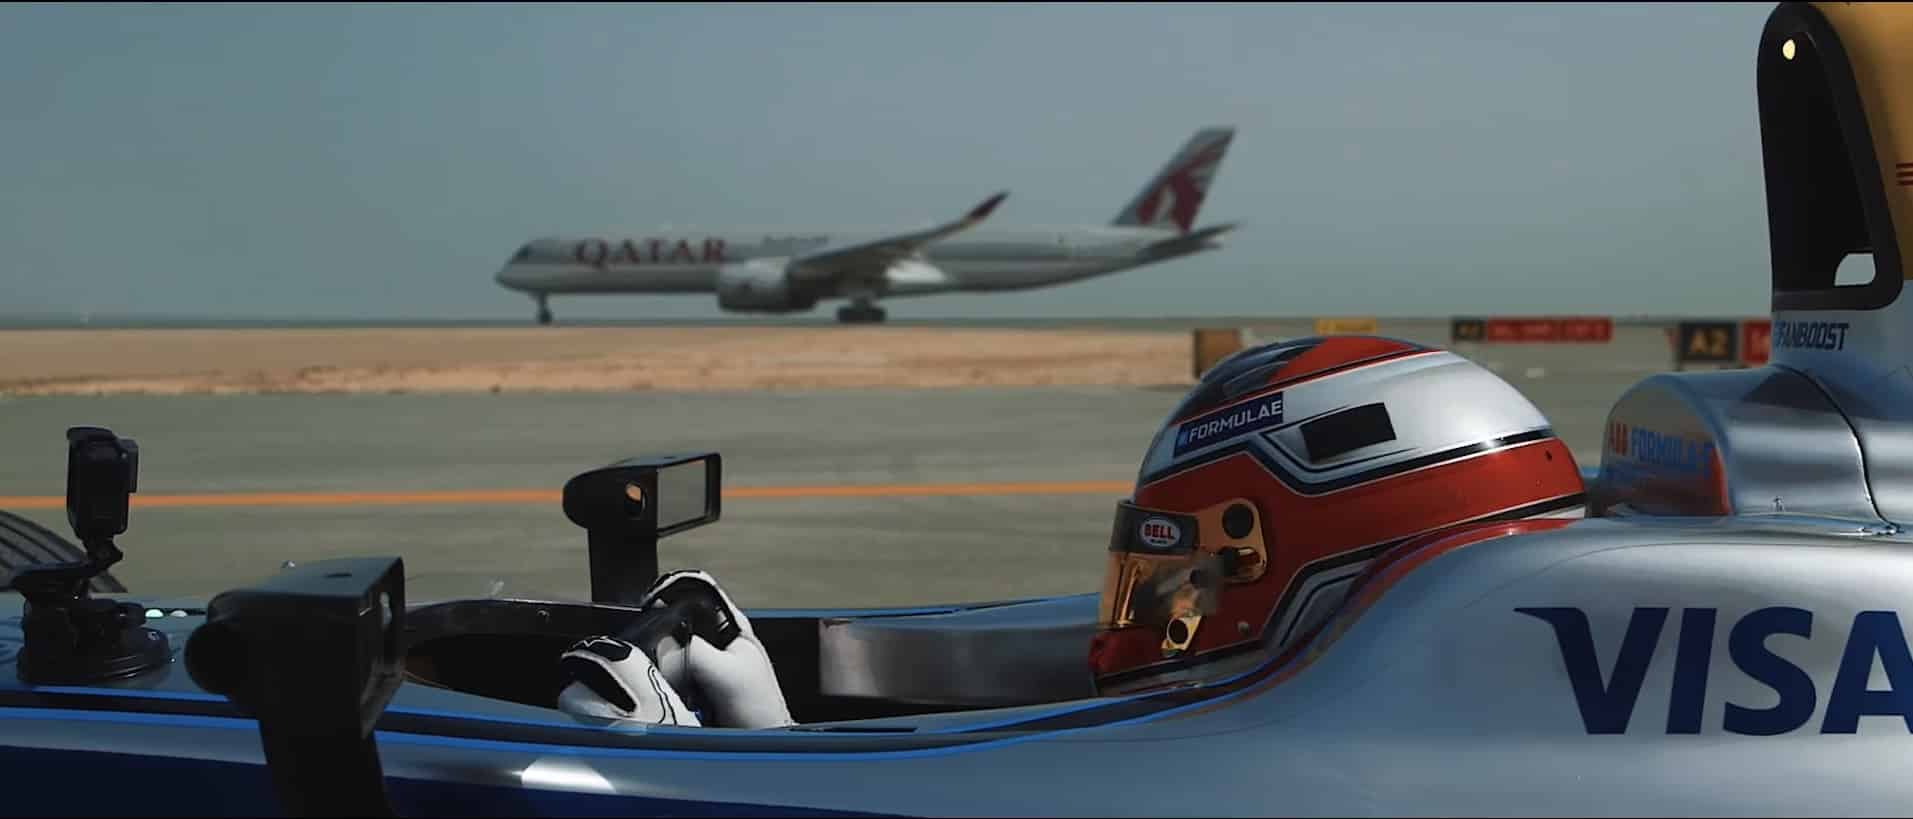 iniciar-race-Fórmula-e-Airbus-a350-Qatar Airways